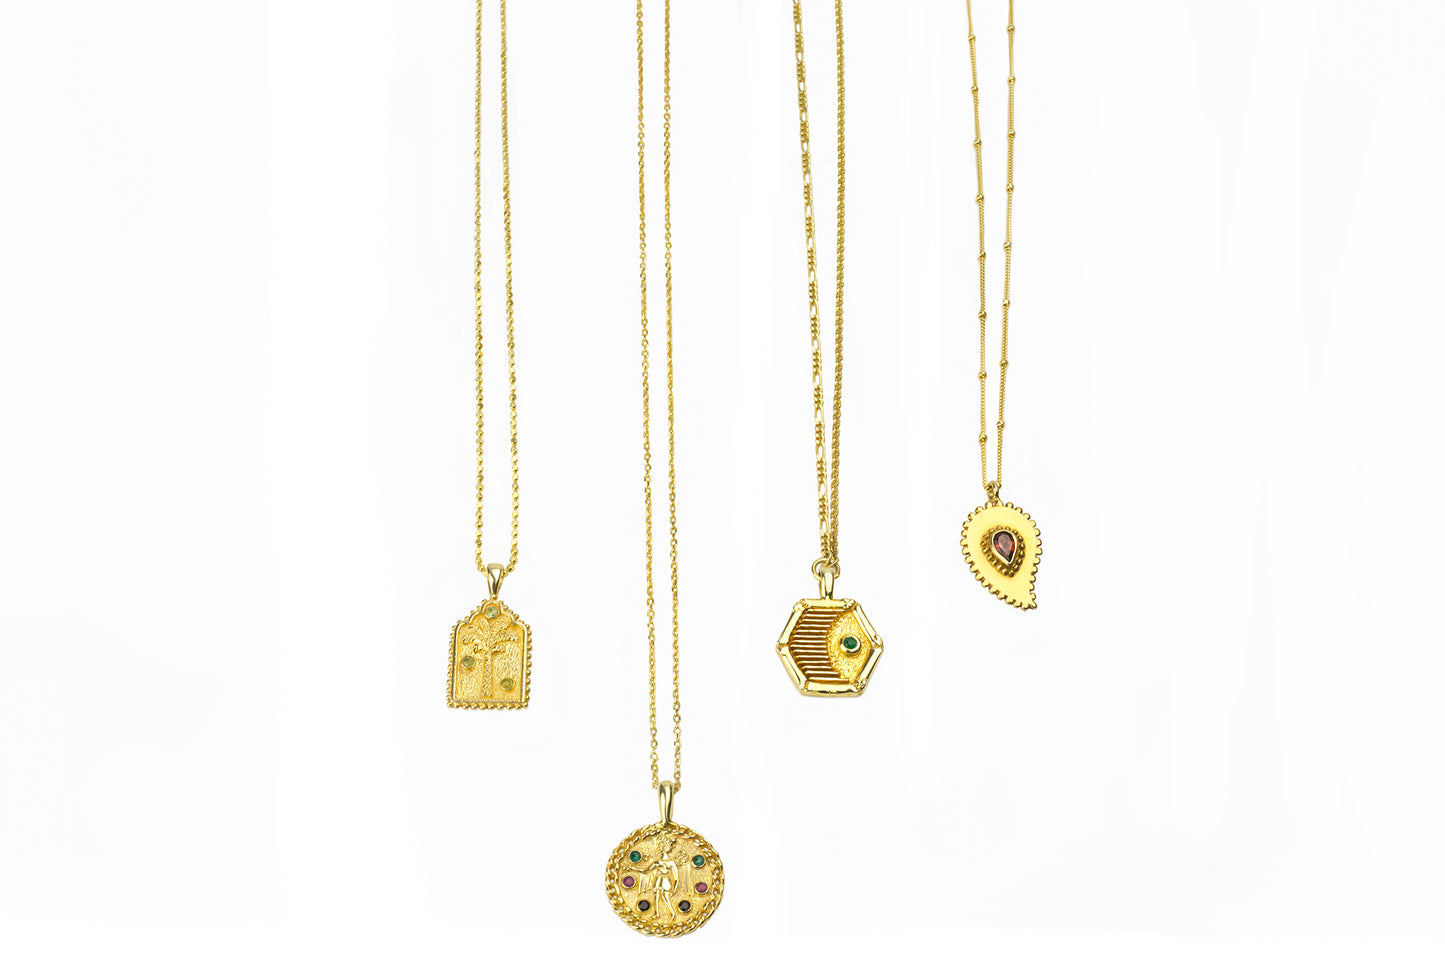 gold necklaces aphrodite garden collection